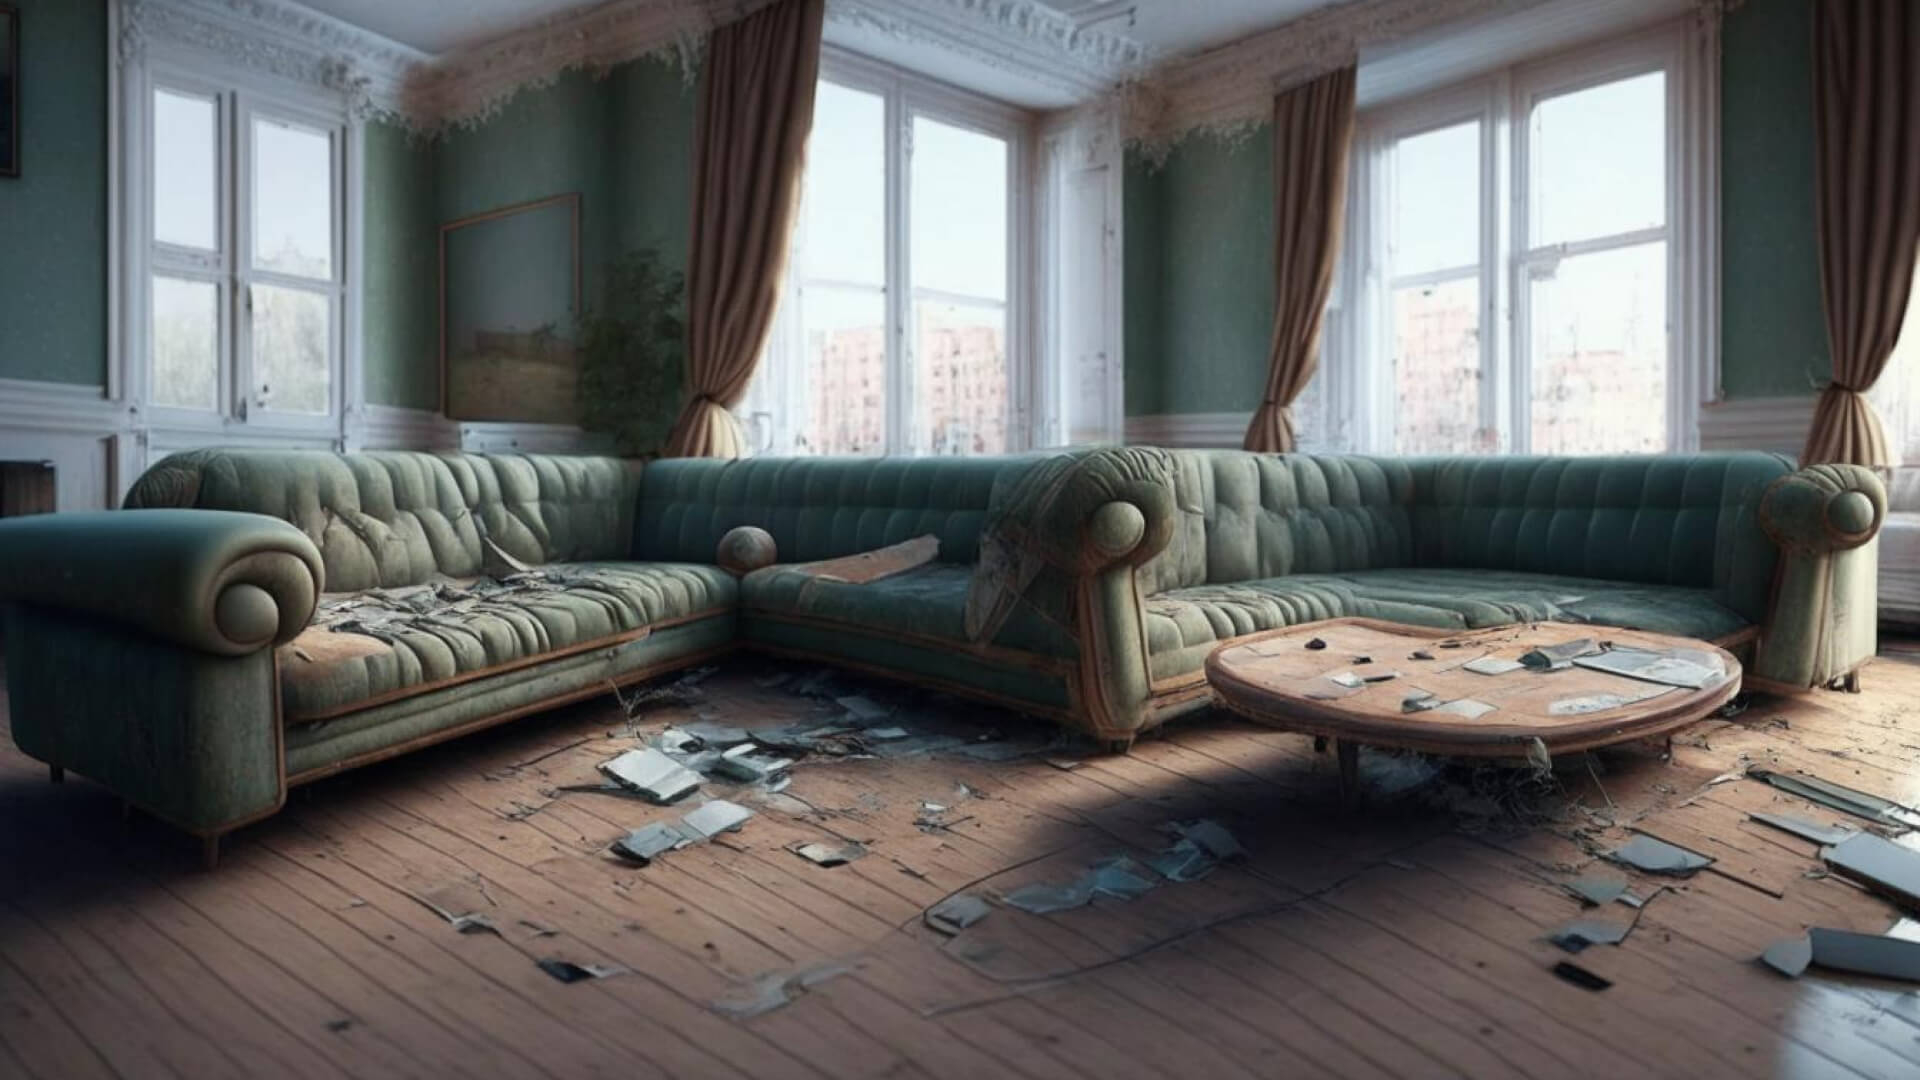 Четвертый запрос: «Москва, квартира с хорошим ремонтом, диван, журнальный столик». Слово «ремонт, видимо», сработало как триггер — в гостиной на картинке точно надо сделать ремонт и уборку.